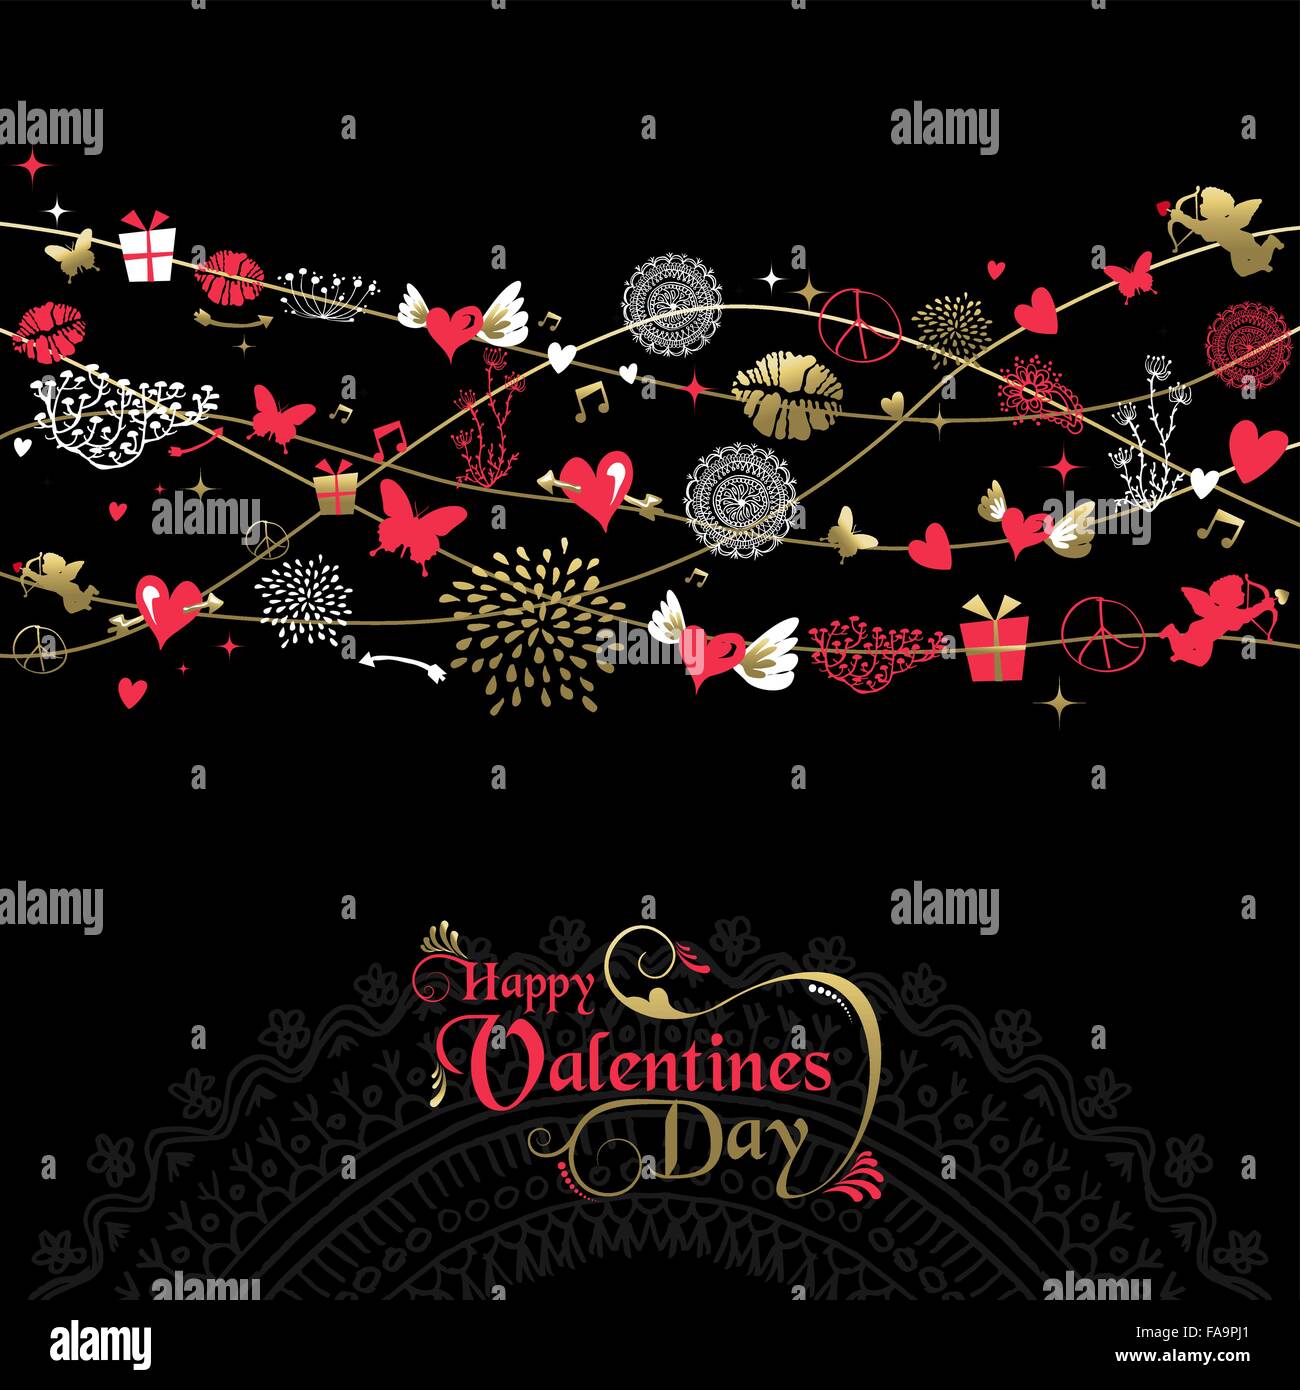 Happy Valentines Day greeting card background design vintage, icona di stile con decor di etichetta di testo in oro e rosa . EPS10 Illustrazione Vettoriale